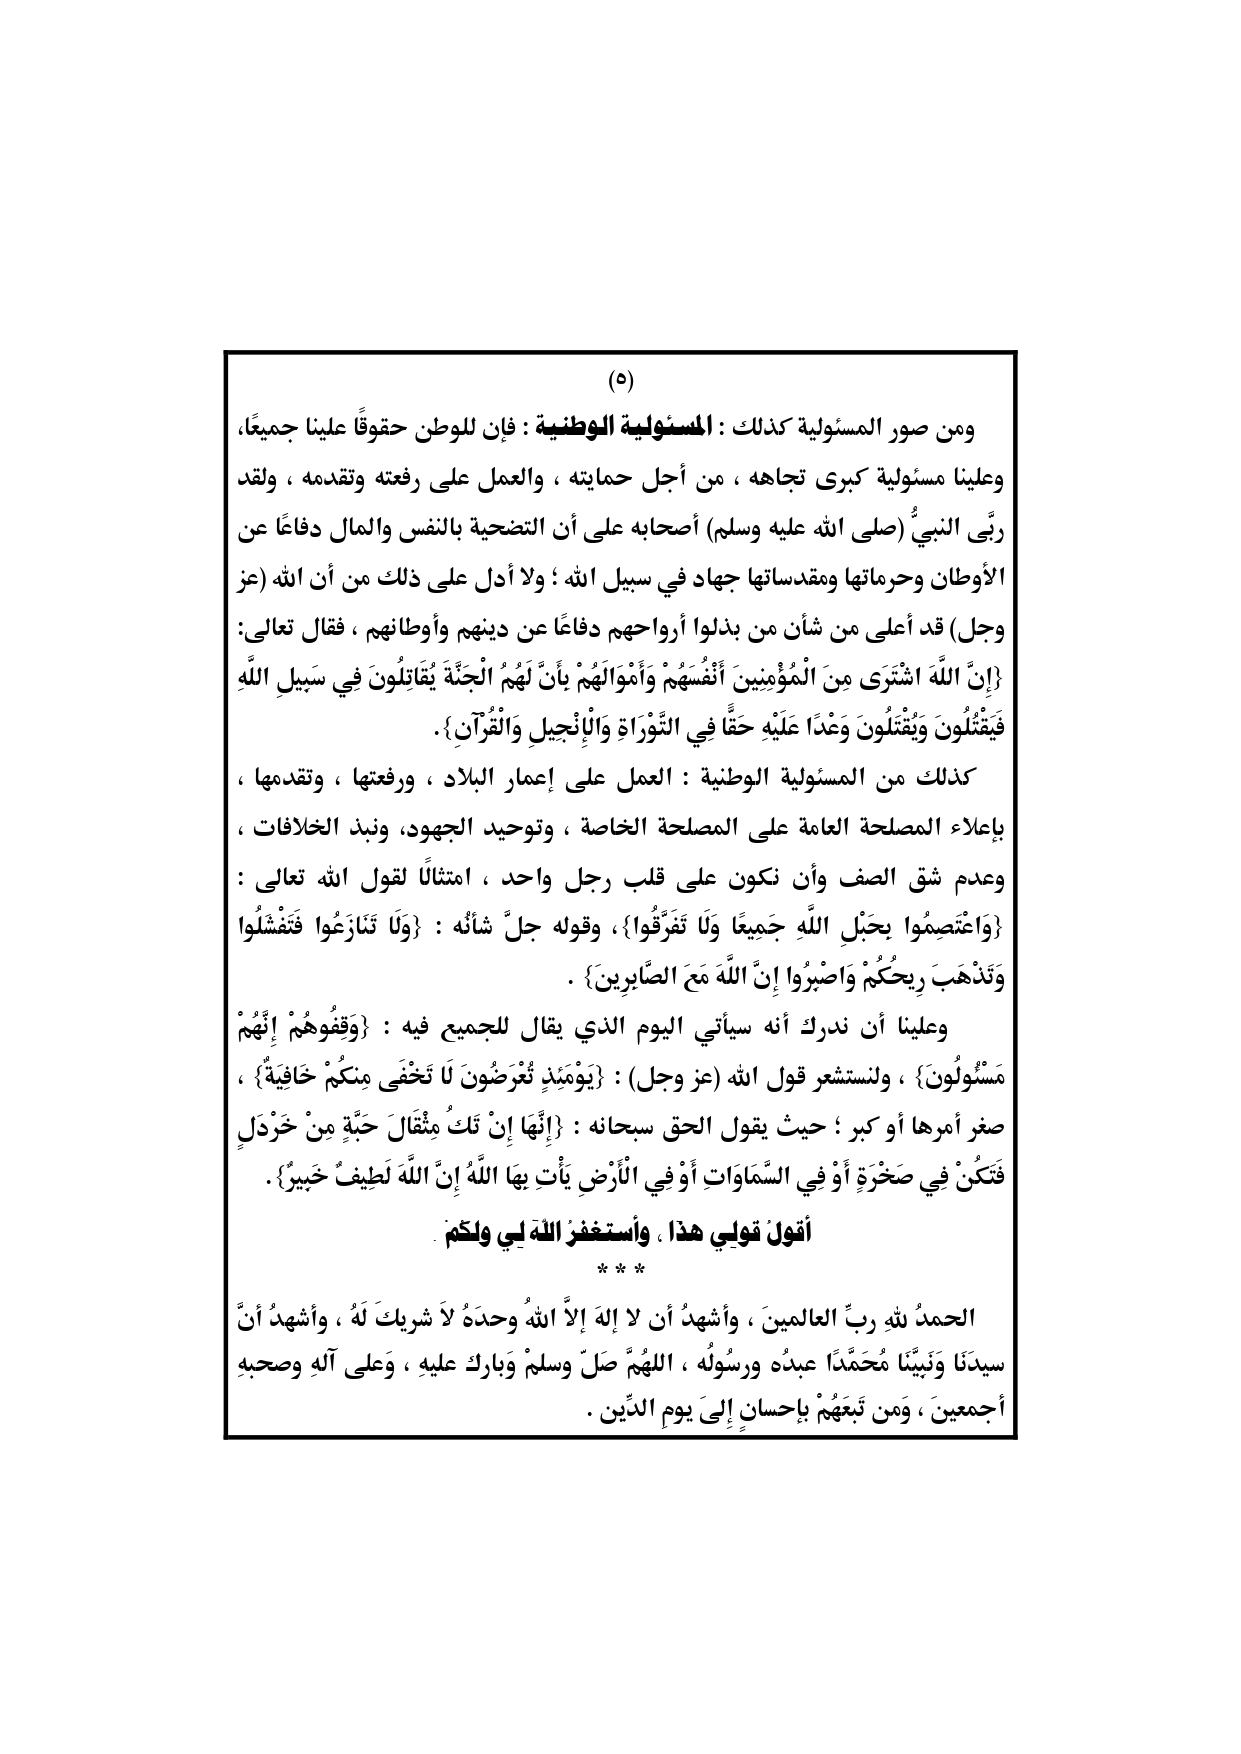 خطبة الجمعة القادمة لوزارة الأوقاف المصرية 5/4/2019 ، خطبة وزارة الأوقاف، المسئولية في الإسلام